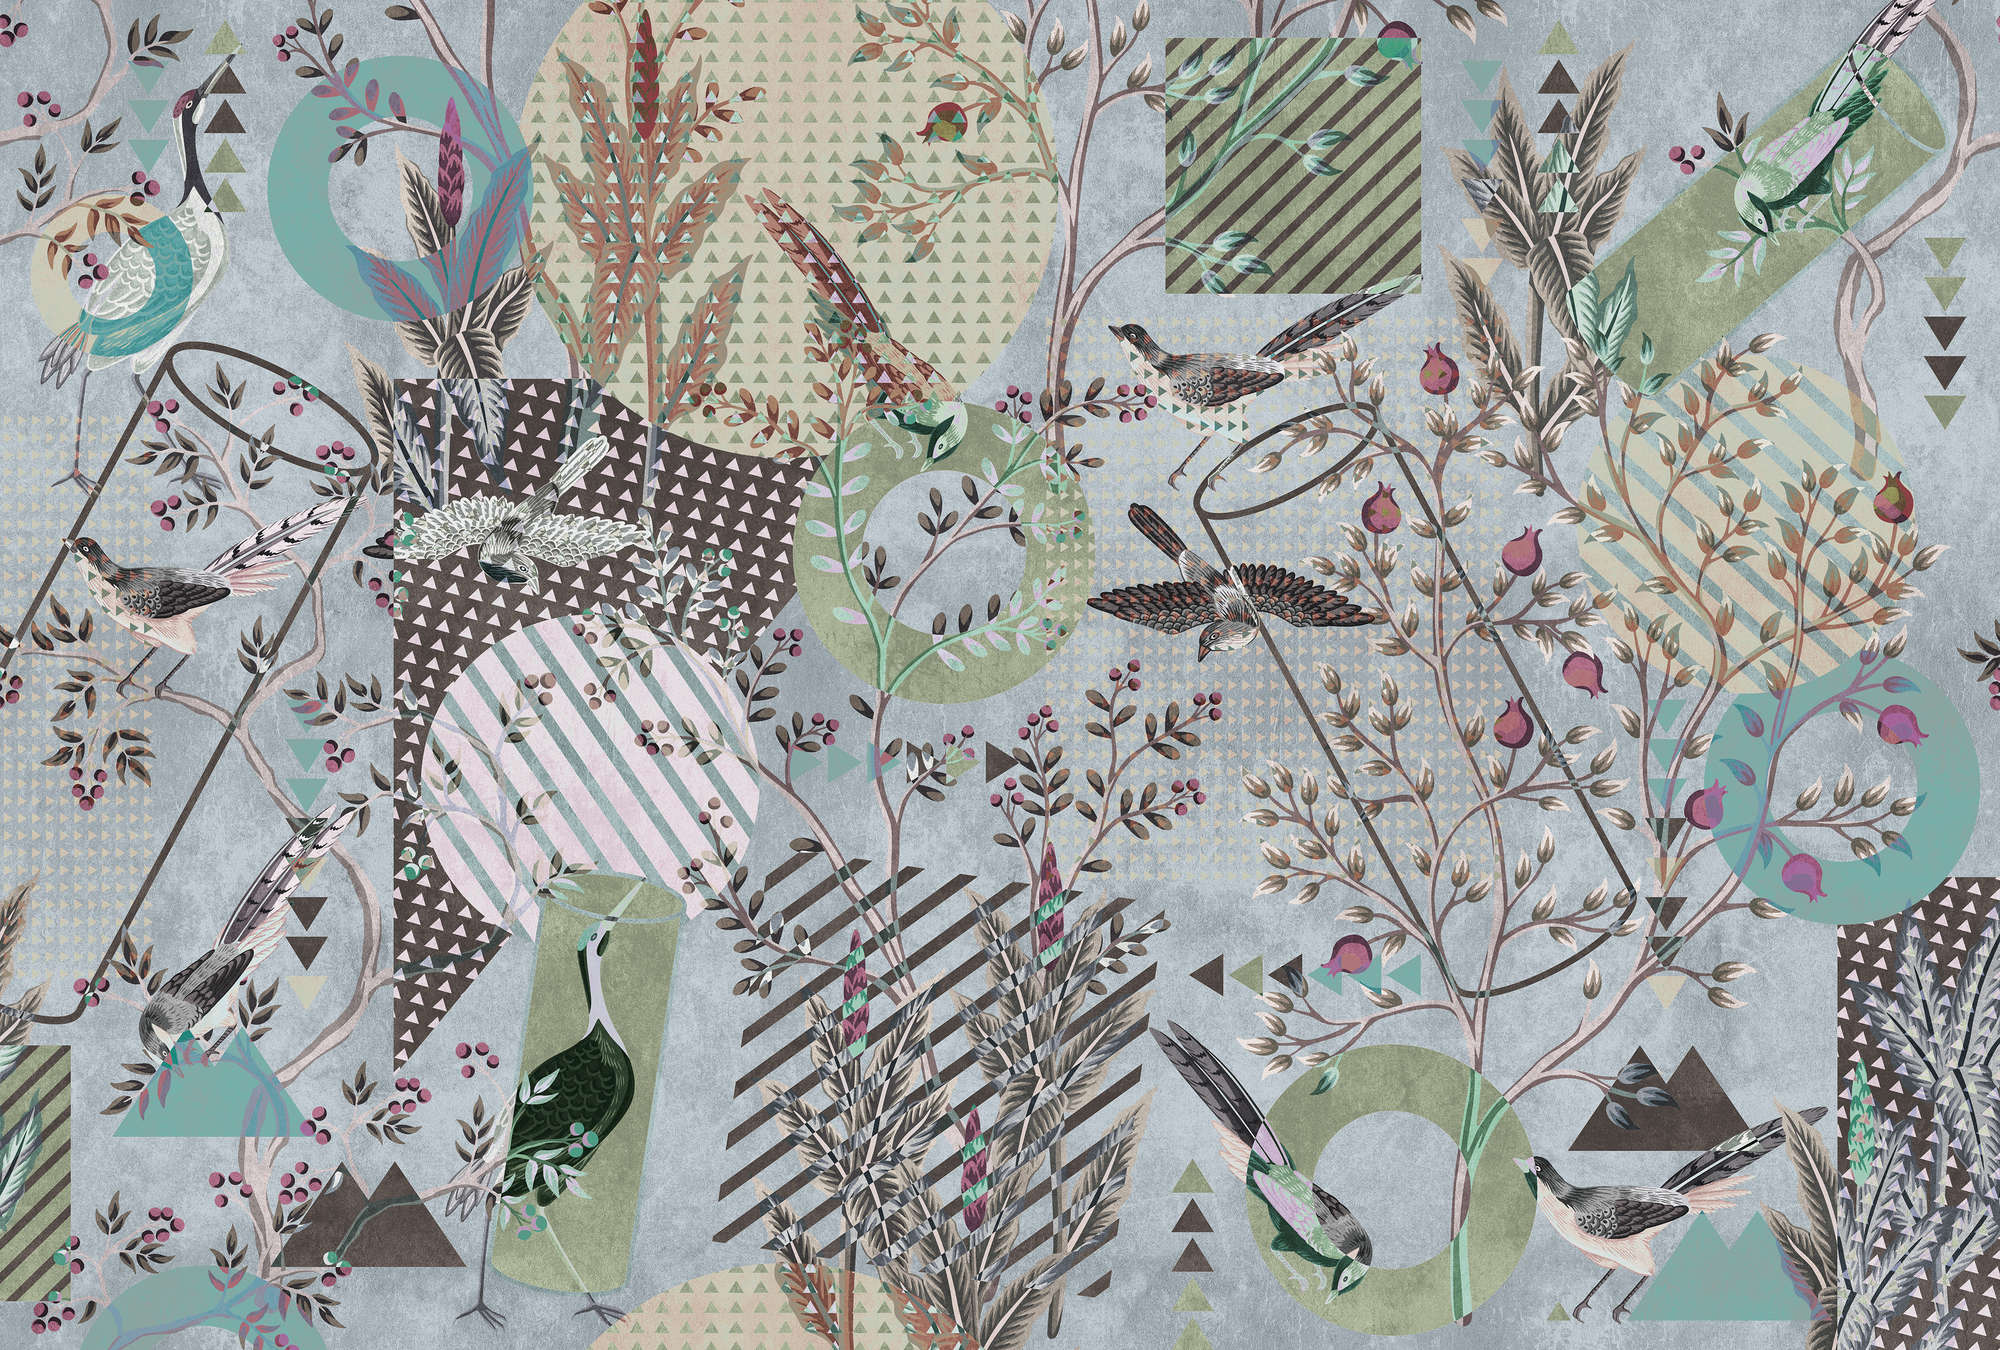             Birds Playground 2 - Oiseaux Papier peint Collage & Mélange de motifs
        